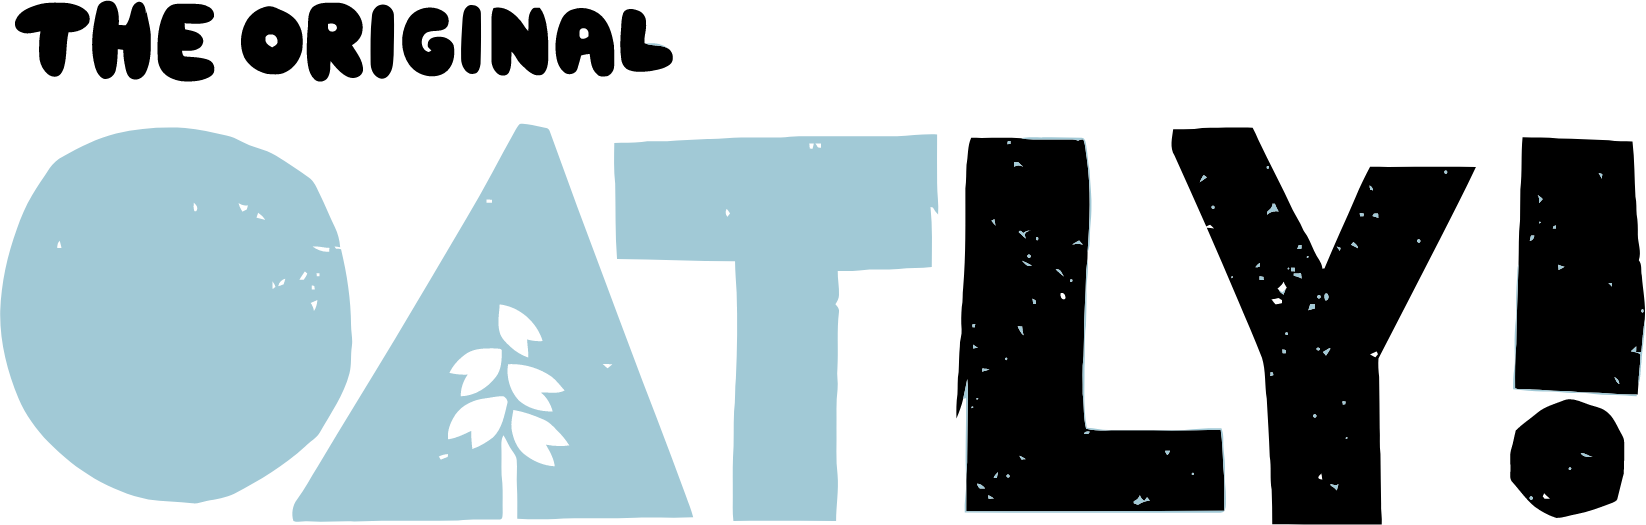 Oatly logo large (transparent PNG)